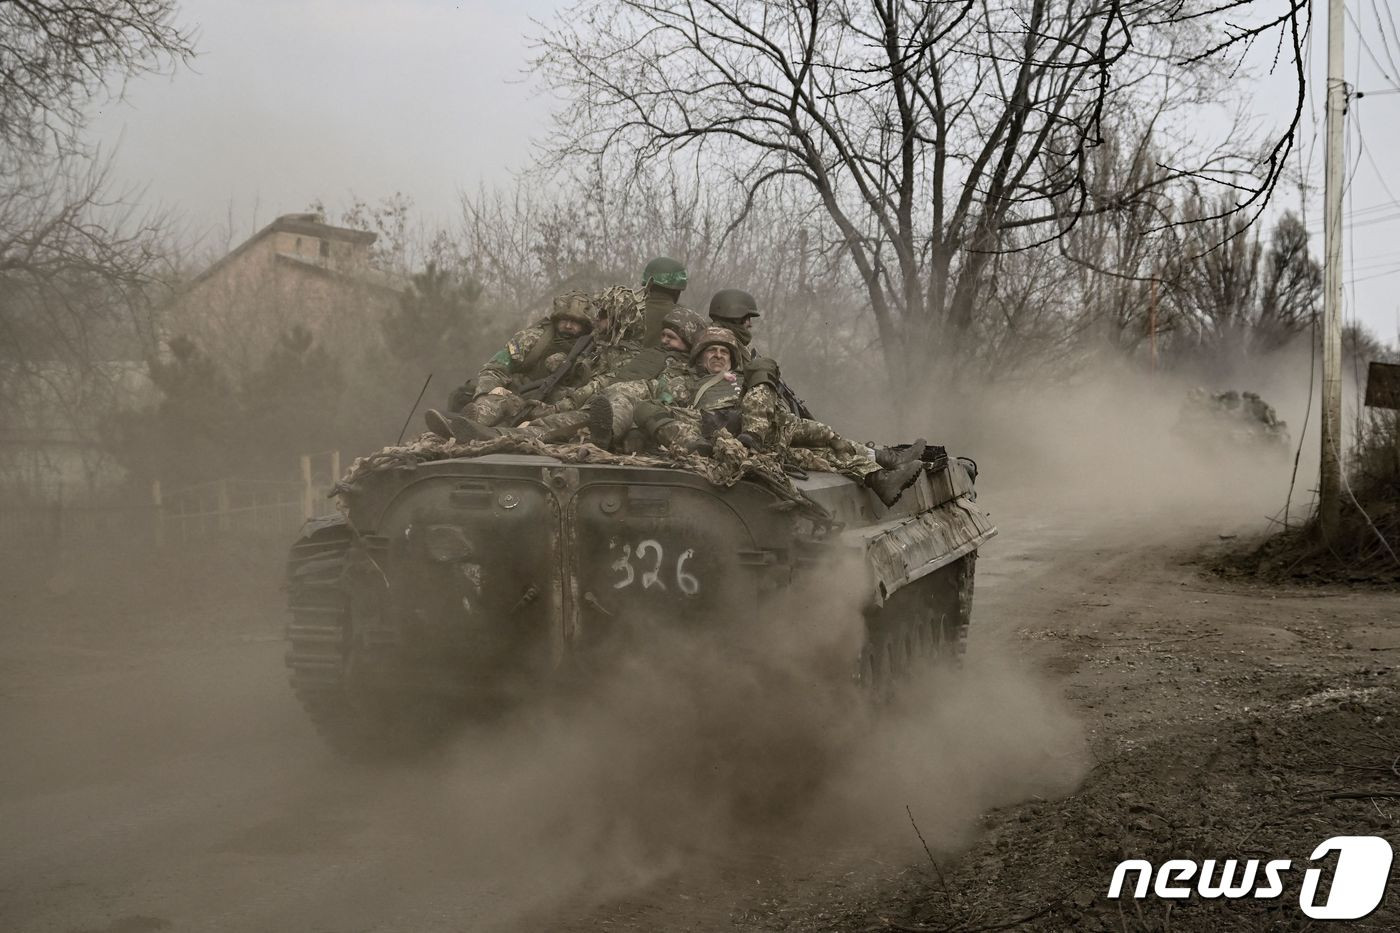 (바흐무트 AFP=뉴스1) 우동명 기자 = 22일(현지시간) 우크라이나 바흐무트 전선에서 병사들이 러시아 군을 향해 BMP 보병 전투 차량을 이동하고 있다.  ⓒ AFP=뉴스1  Copyright ? 뉴스1. All rights reserved. 무단 전재 및 재배포 금지.